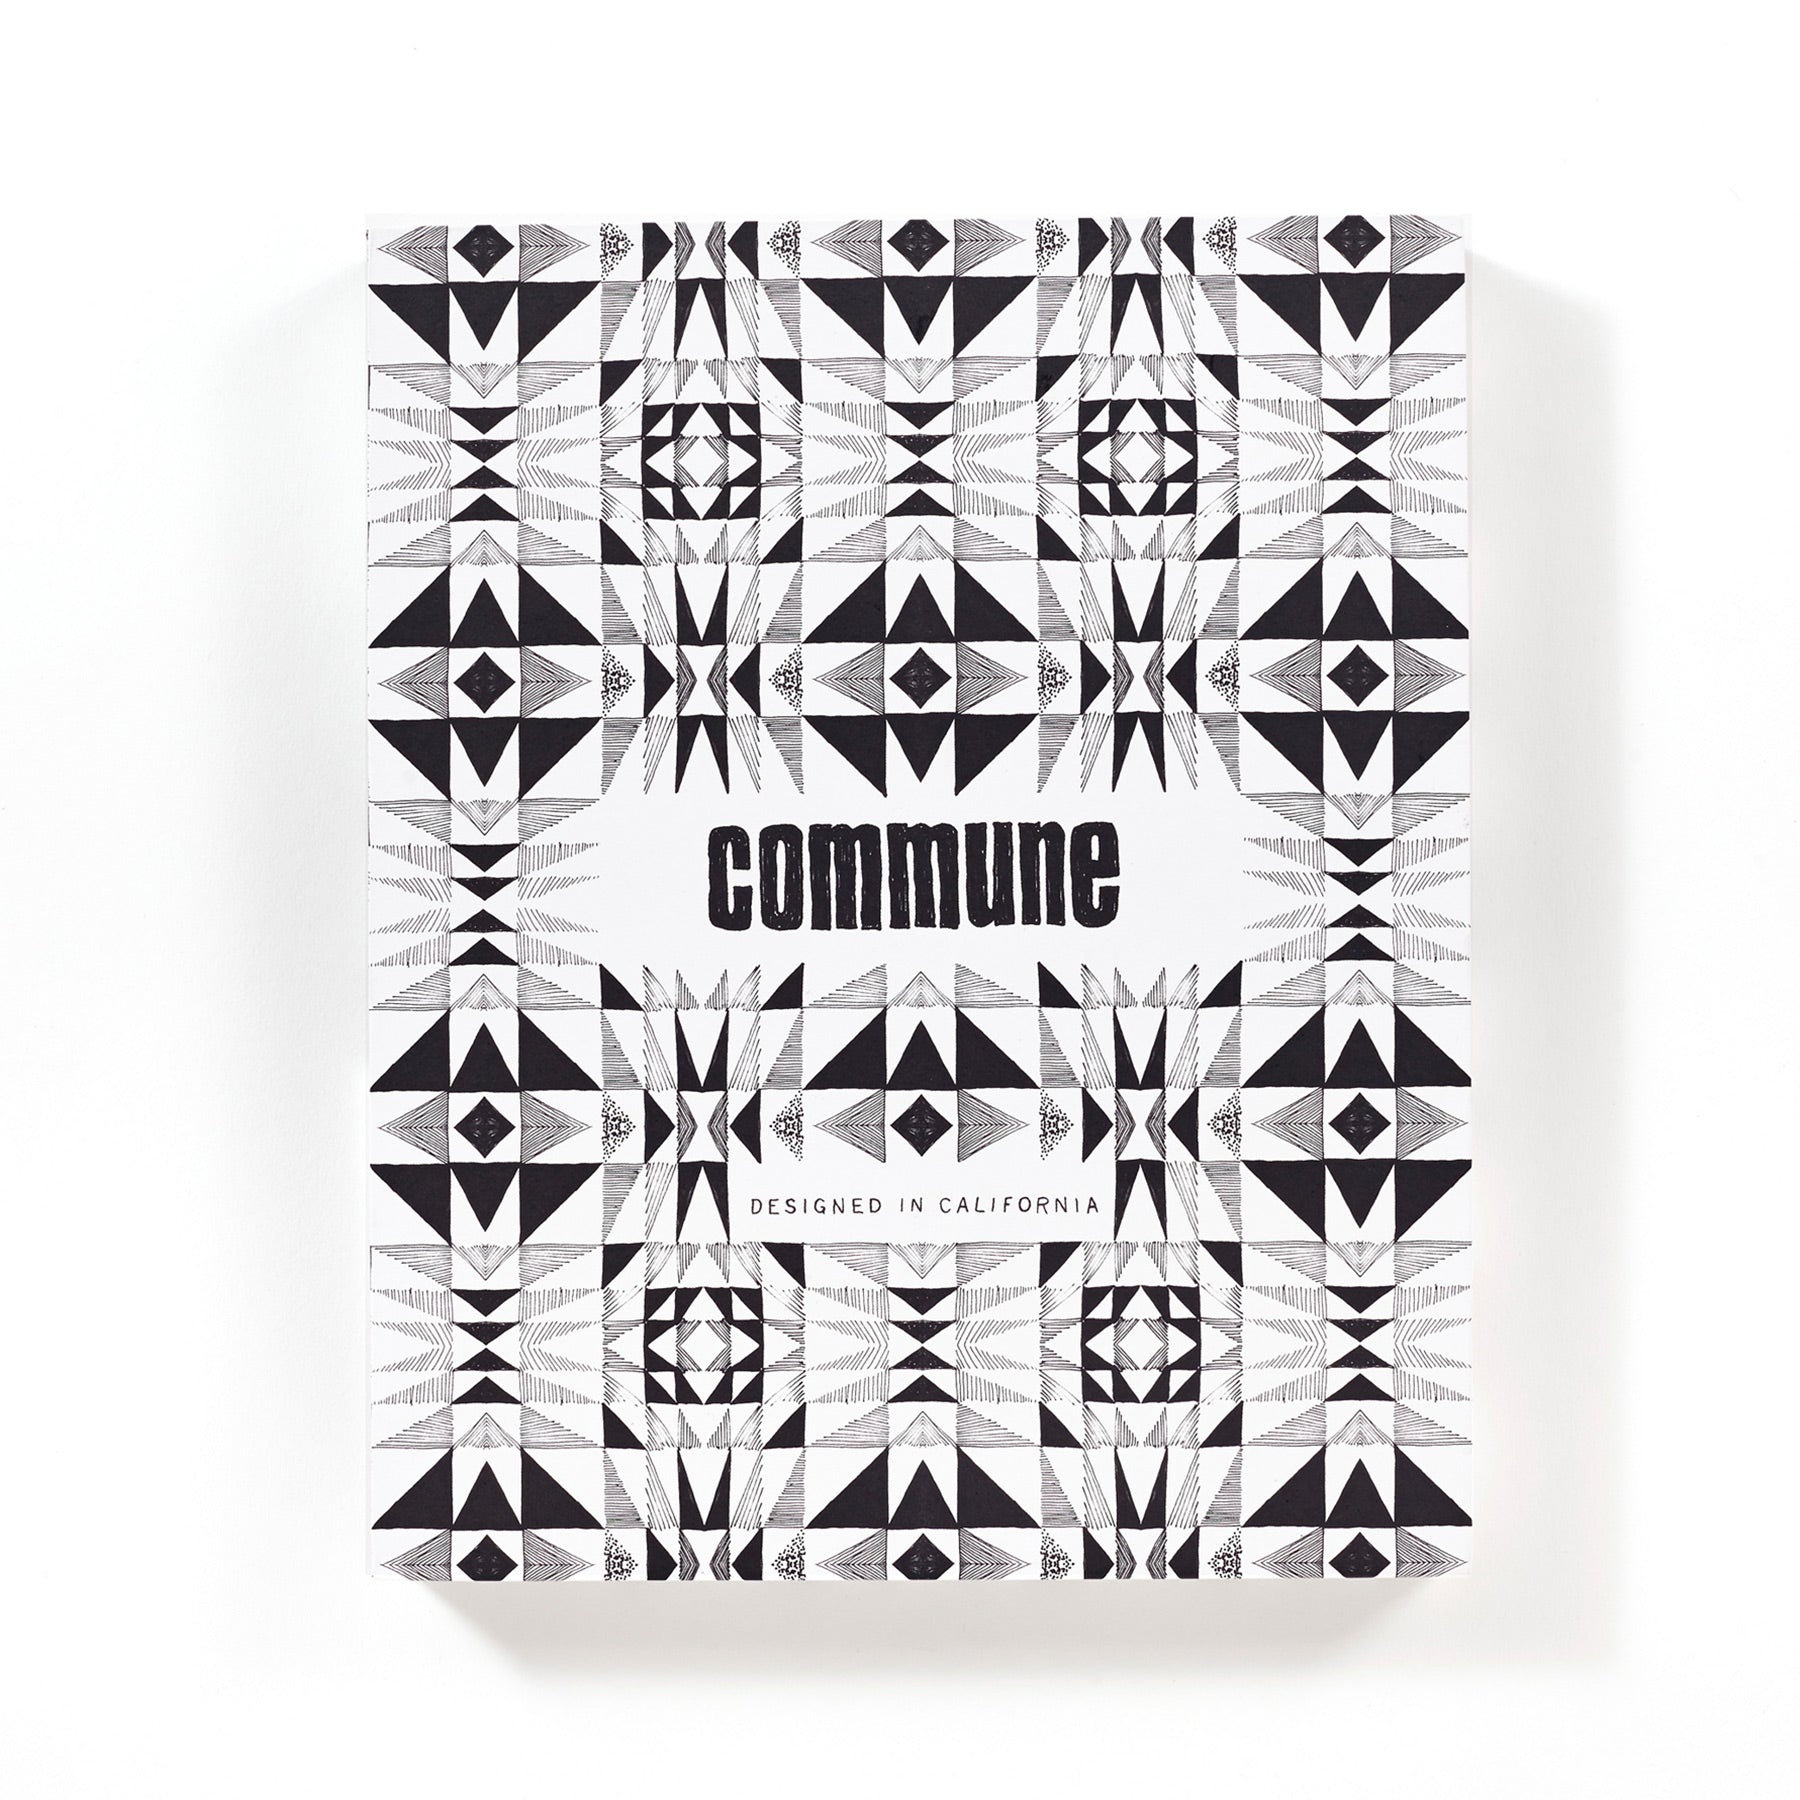 Commune: Designed in California Zoom Image 1